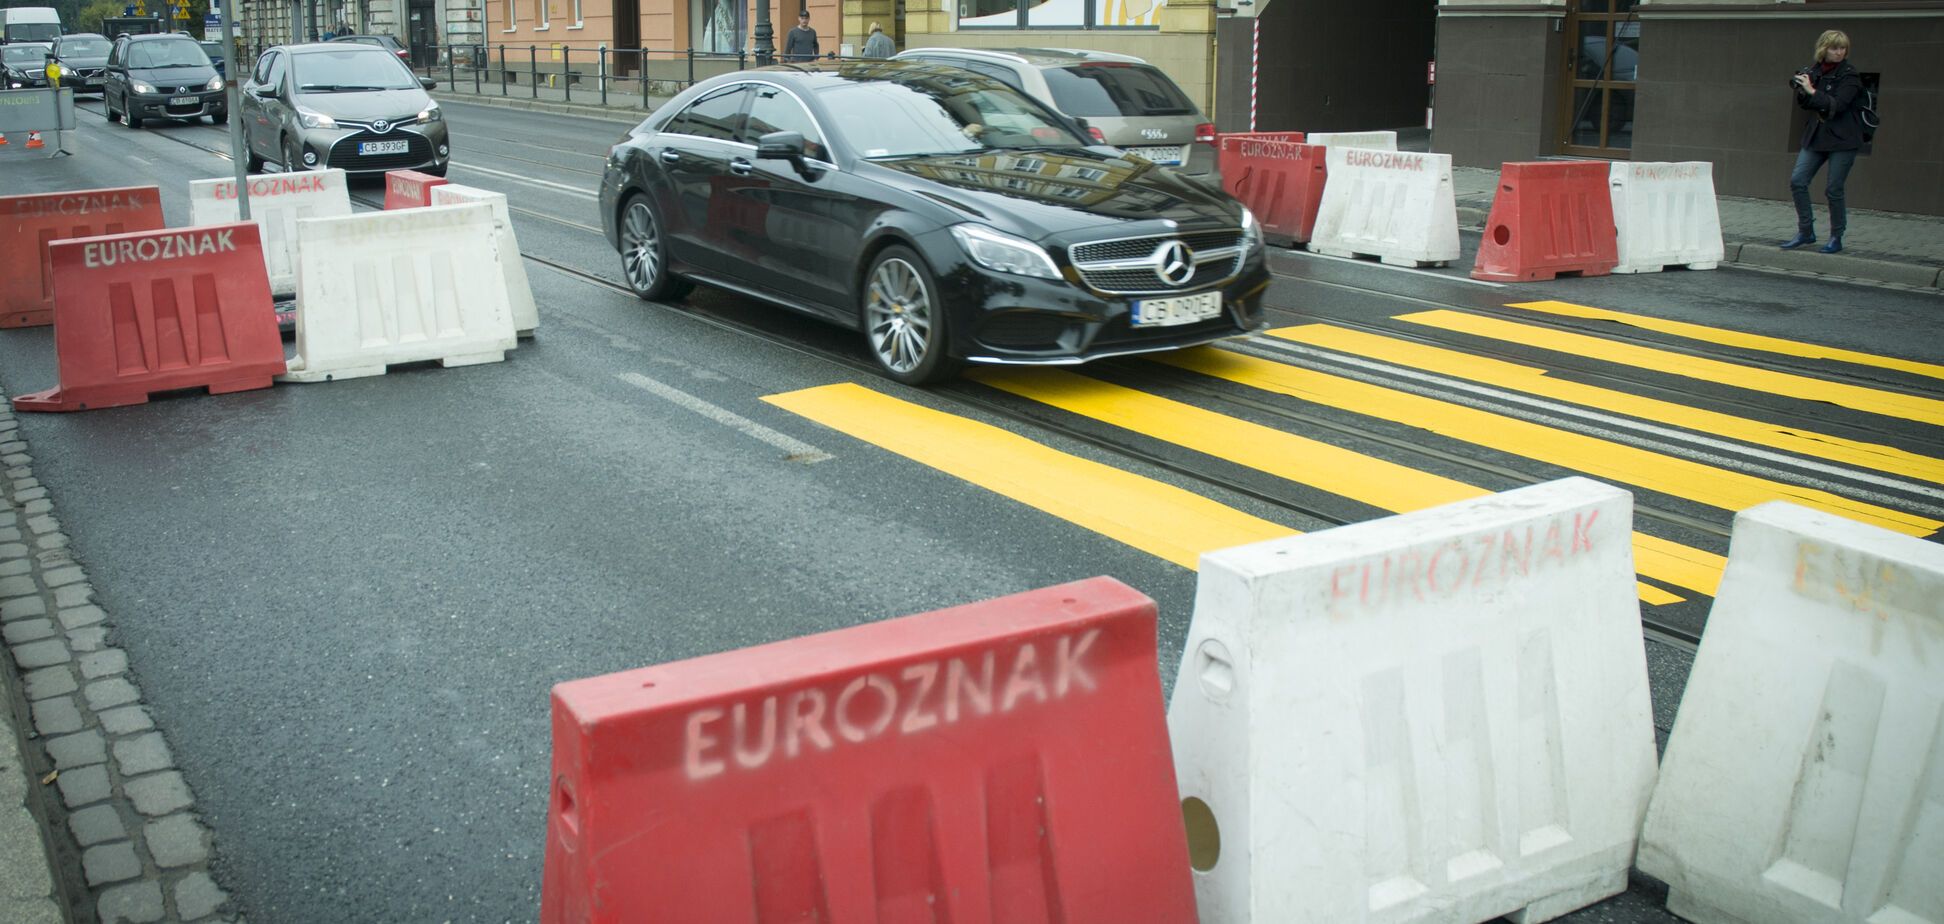 Авто на еврономерах: в Украине назвали сроки решения проблемы